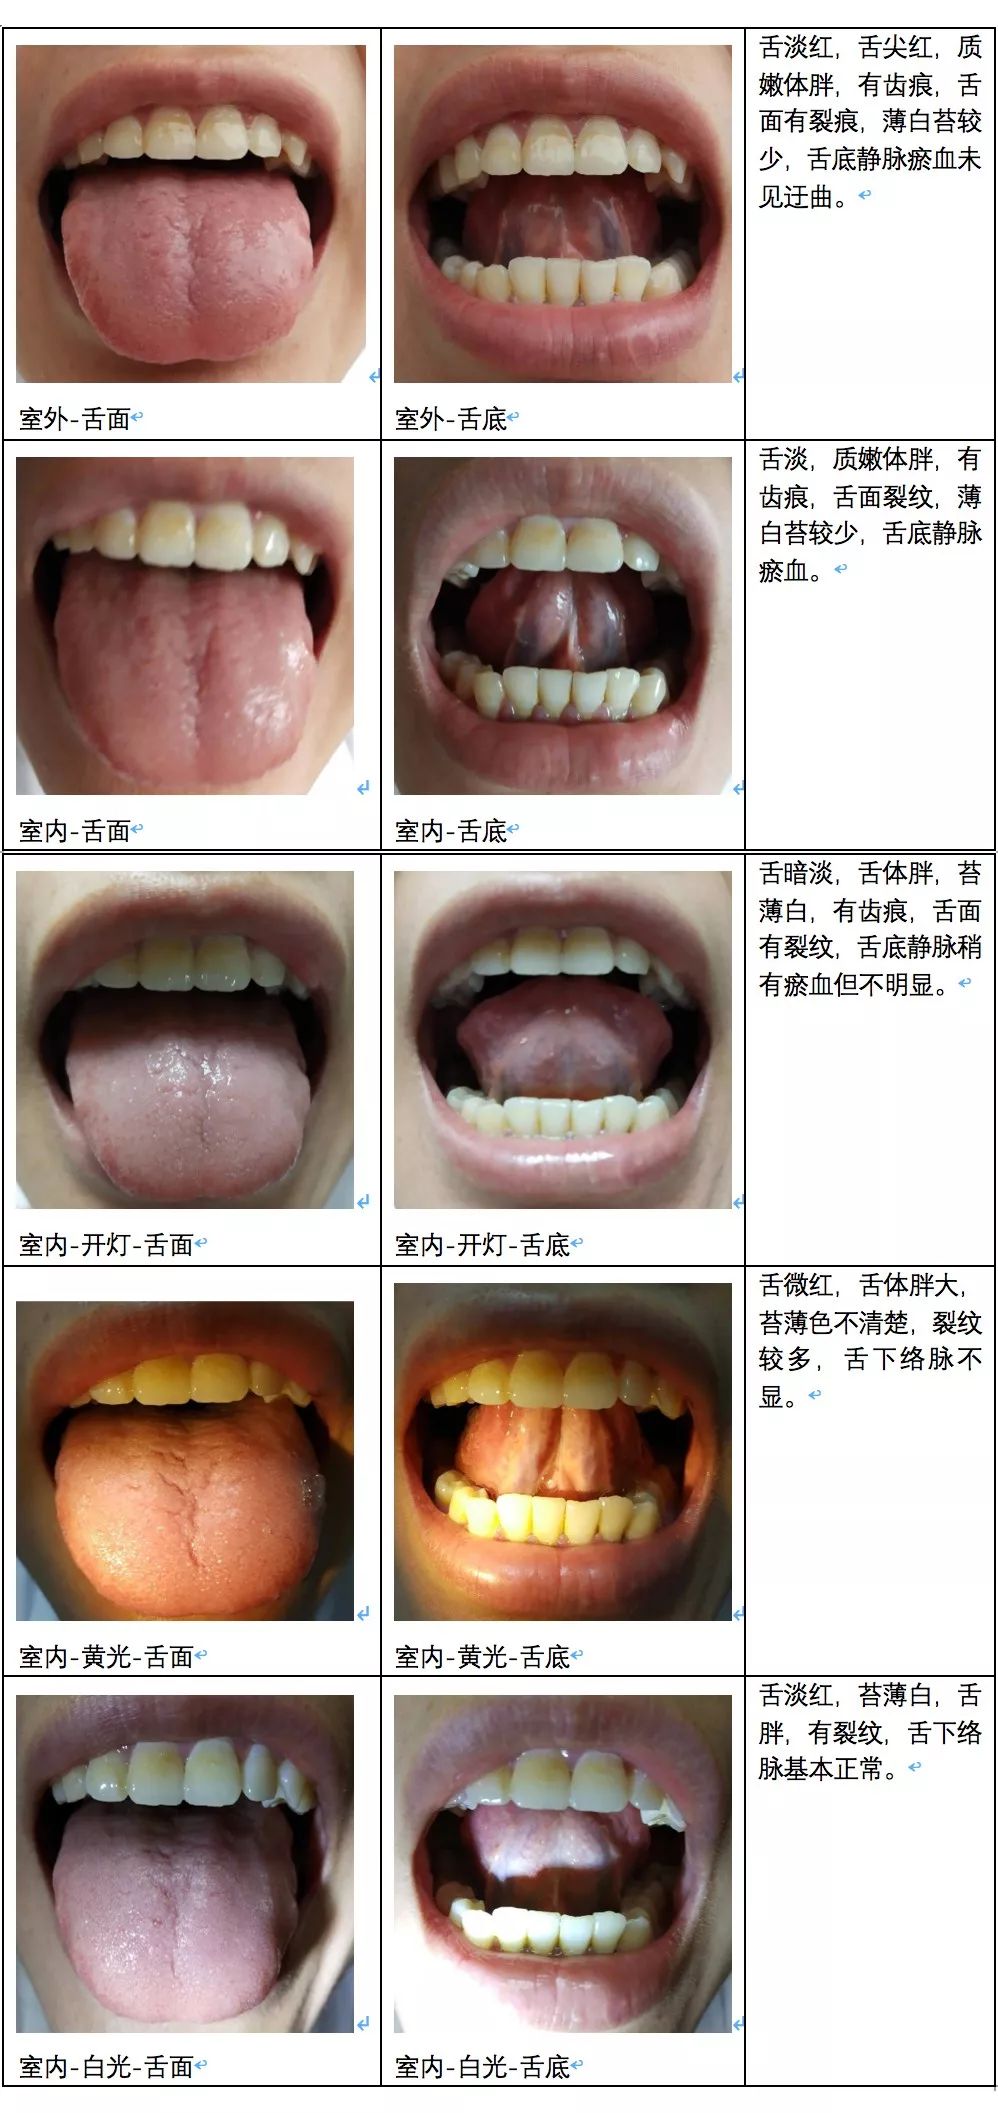 中医看舌苔图片与疾病图片